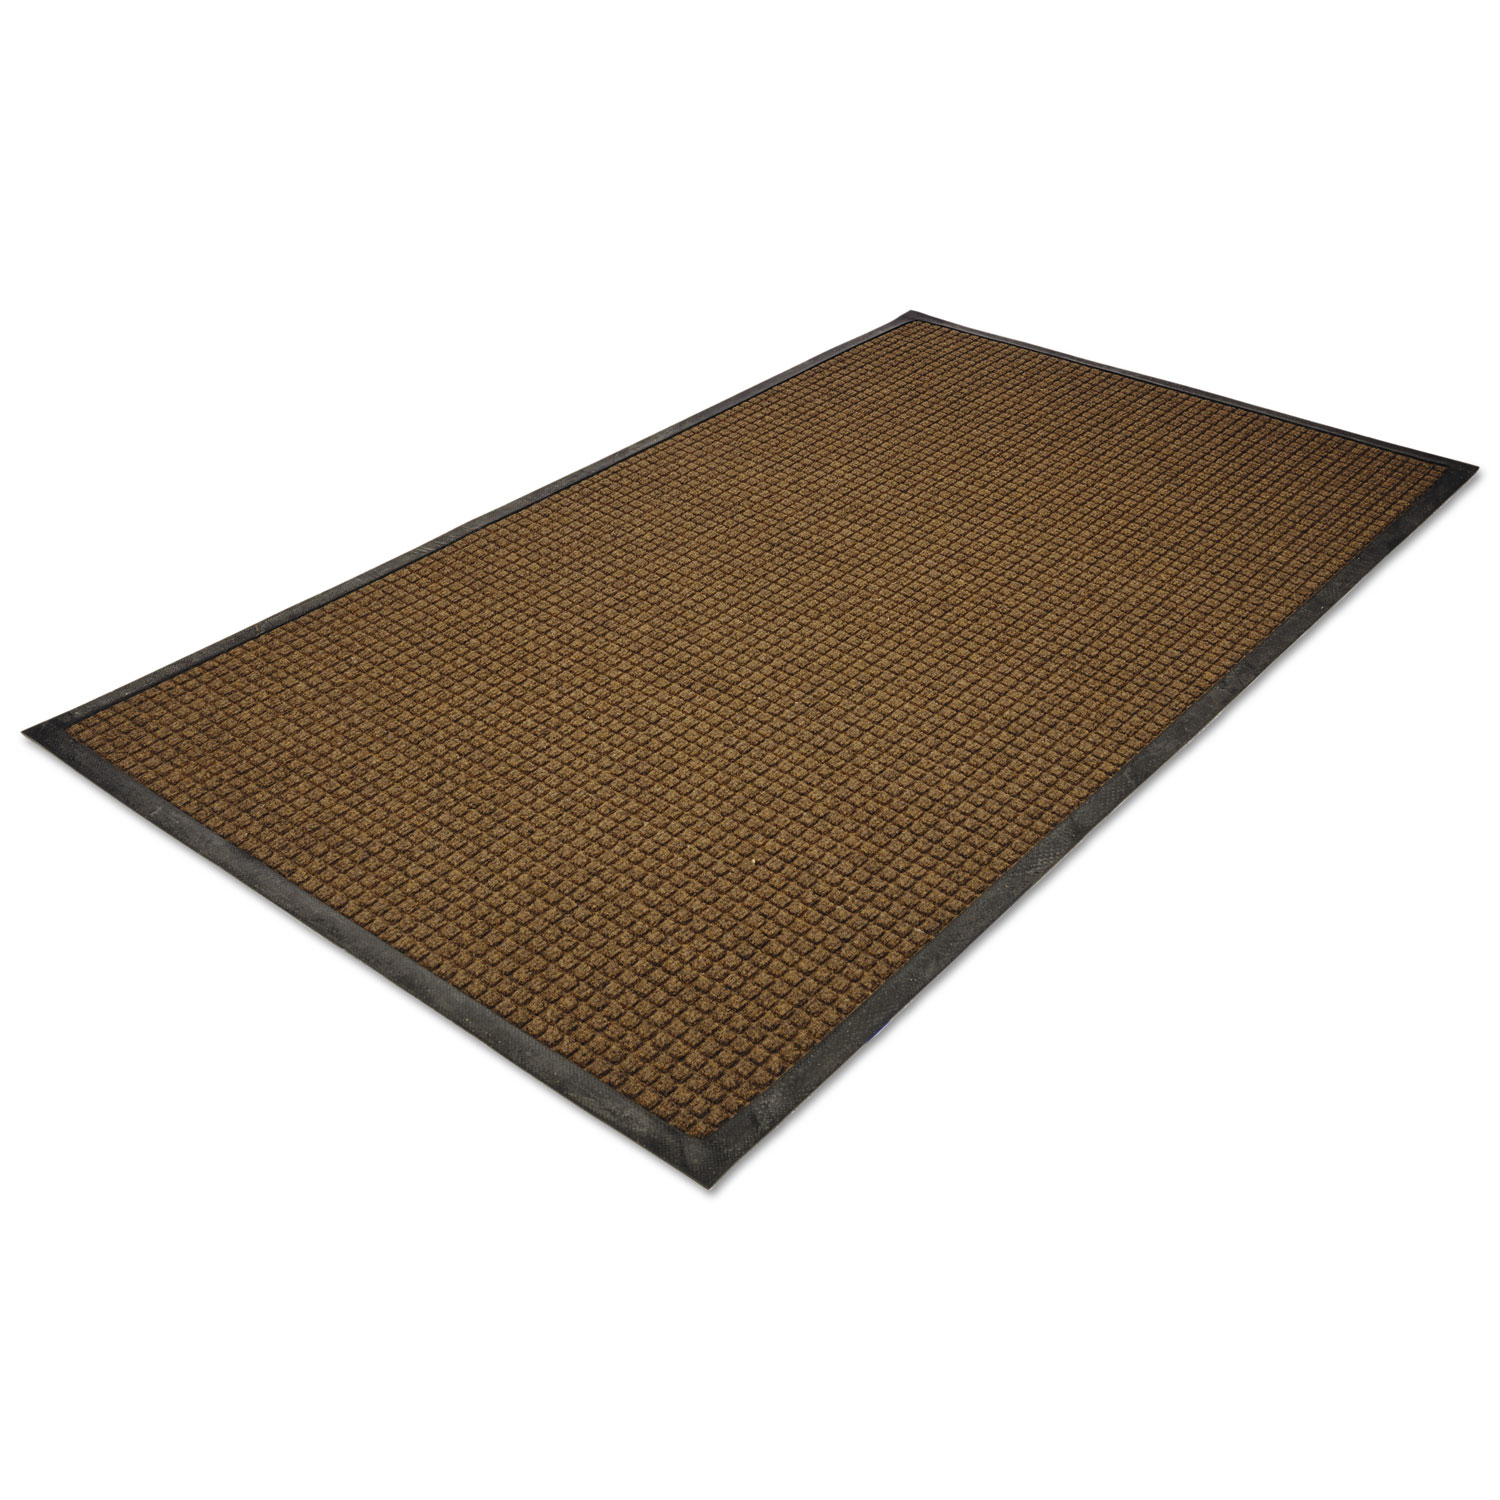  Guardian WG031014 WaterGuard Indoor/Outdoor Scraper Mat, 36 x 120, Brown (MLLWG031014) 